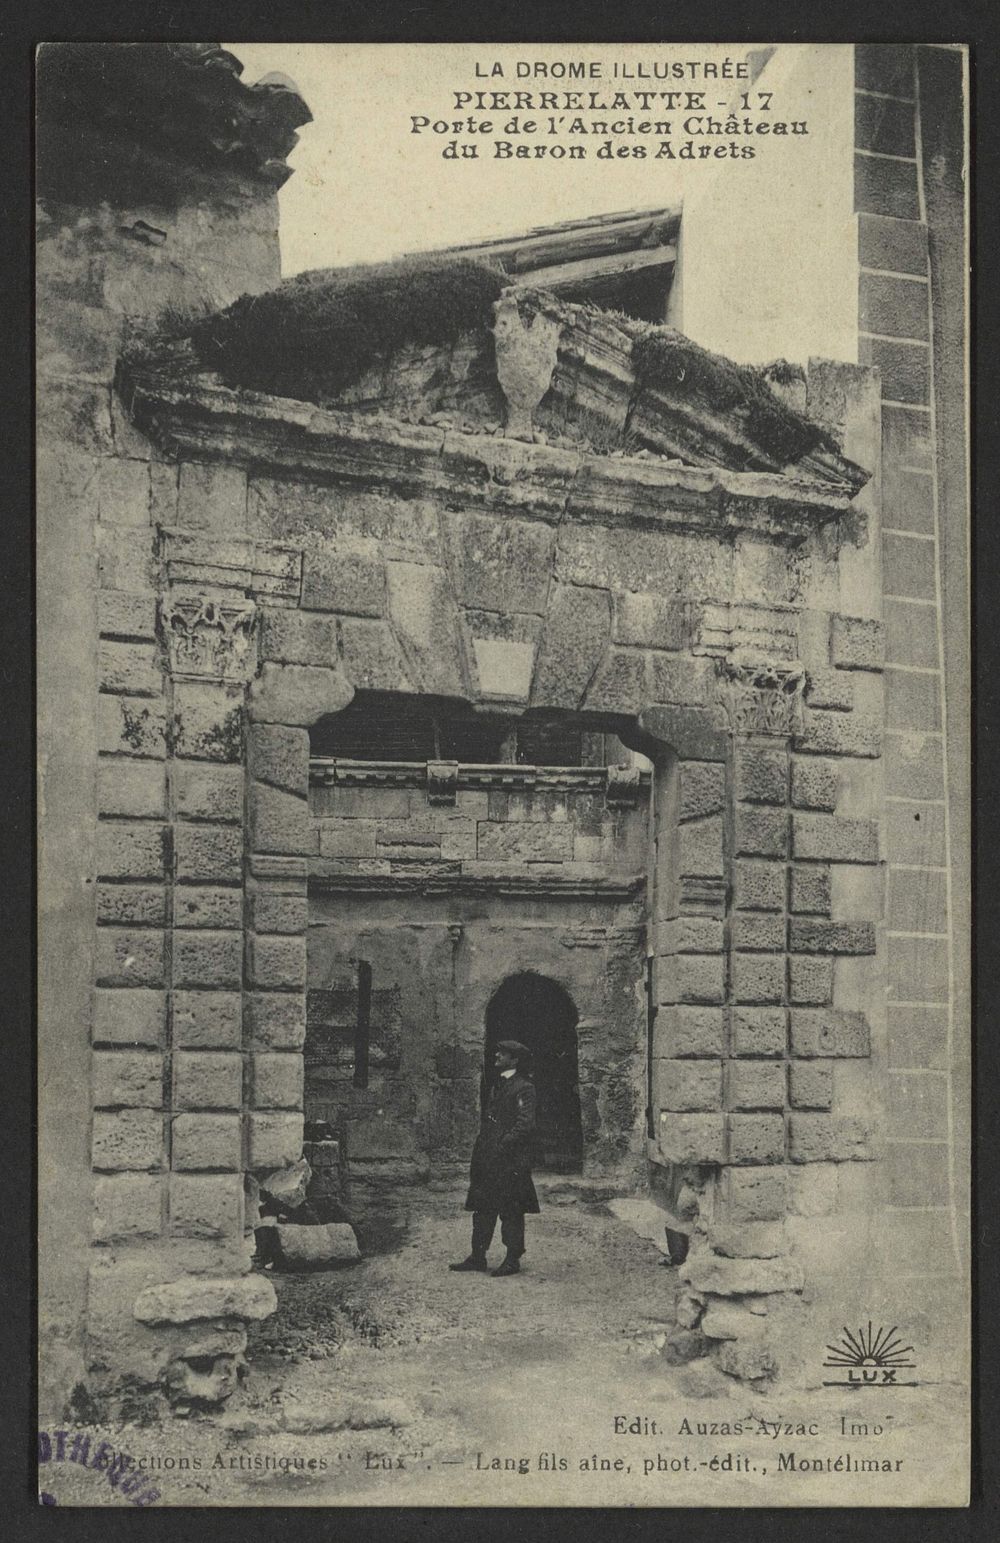 Pierrelatte - Porte de l'ancien château du Baron des Adrets